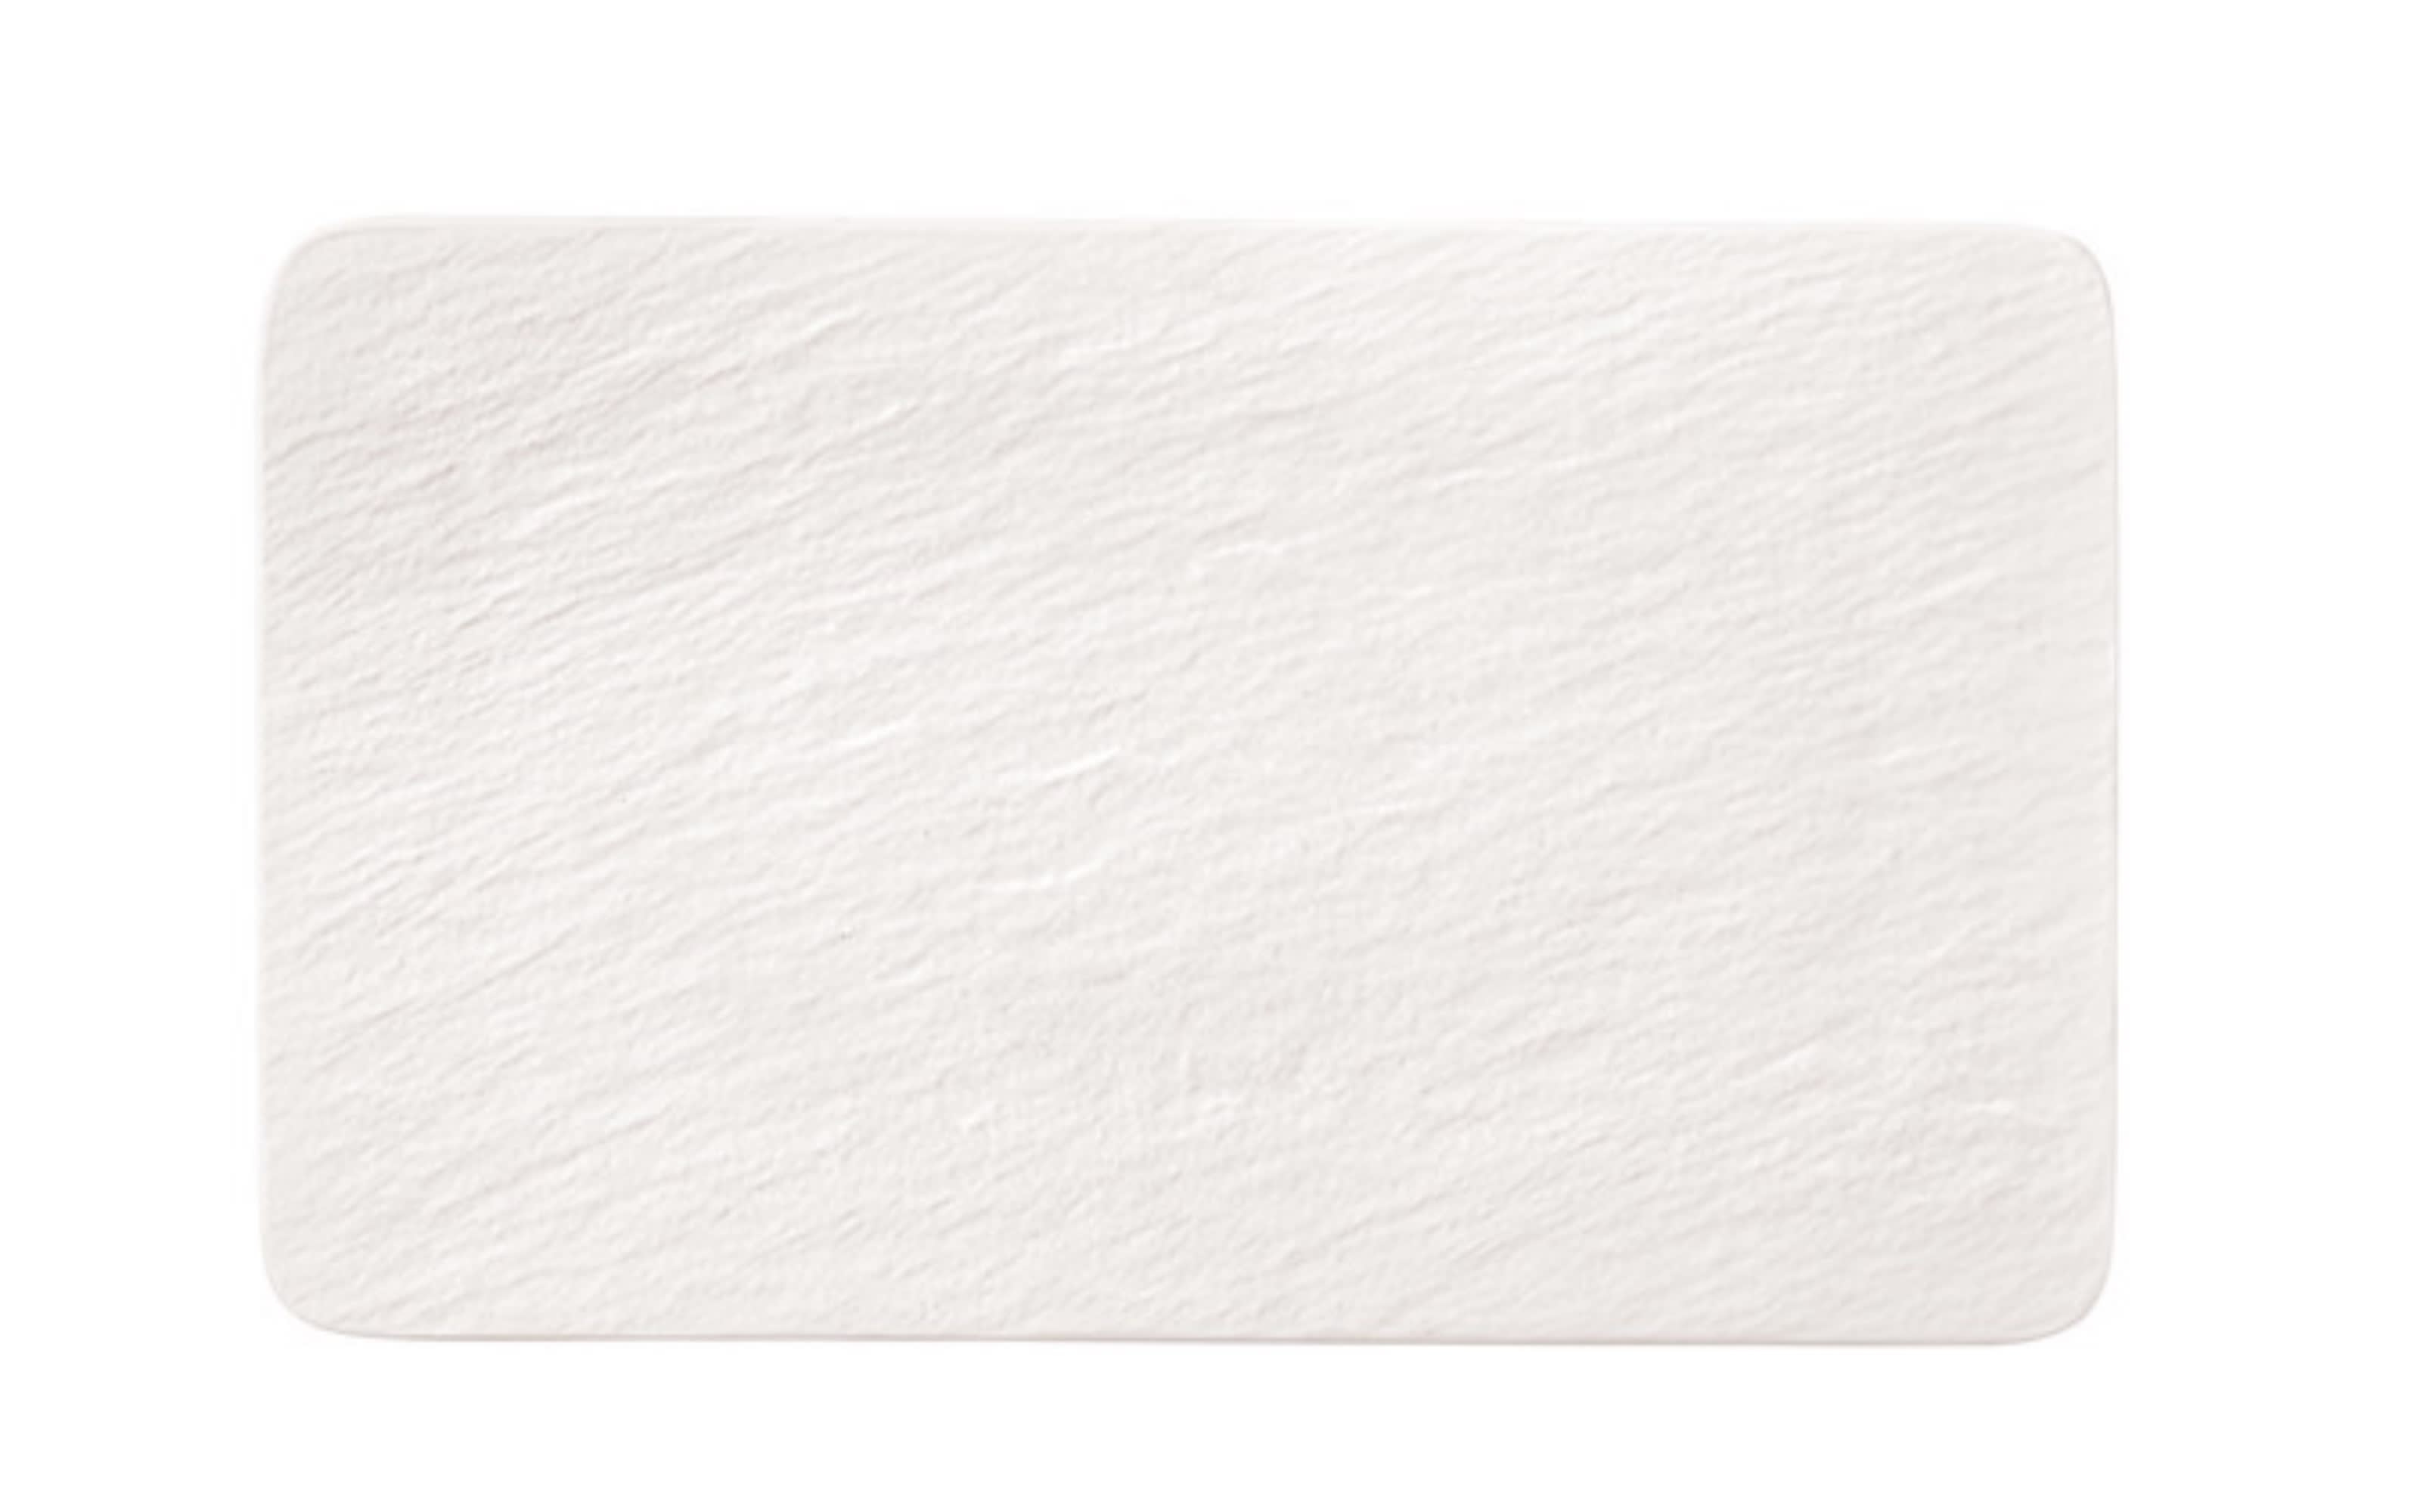 Multifunktionsteller Manufacture Rock Blanc in weiß, 28 x 17 cm